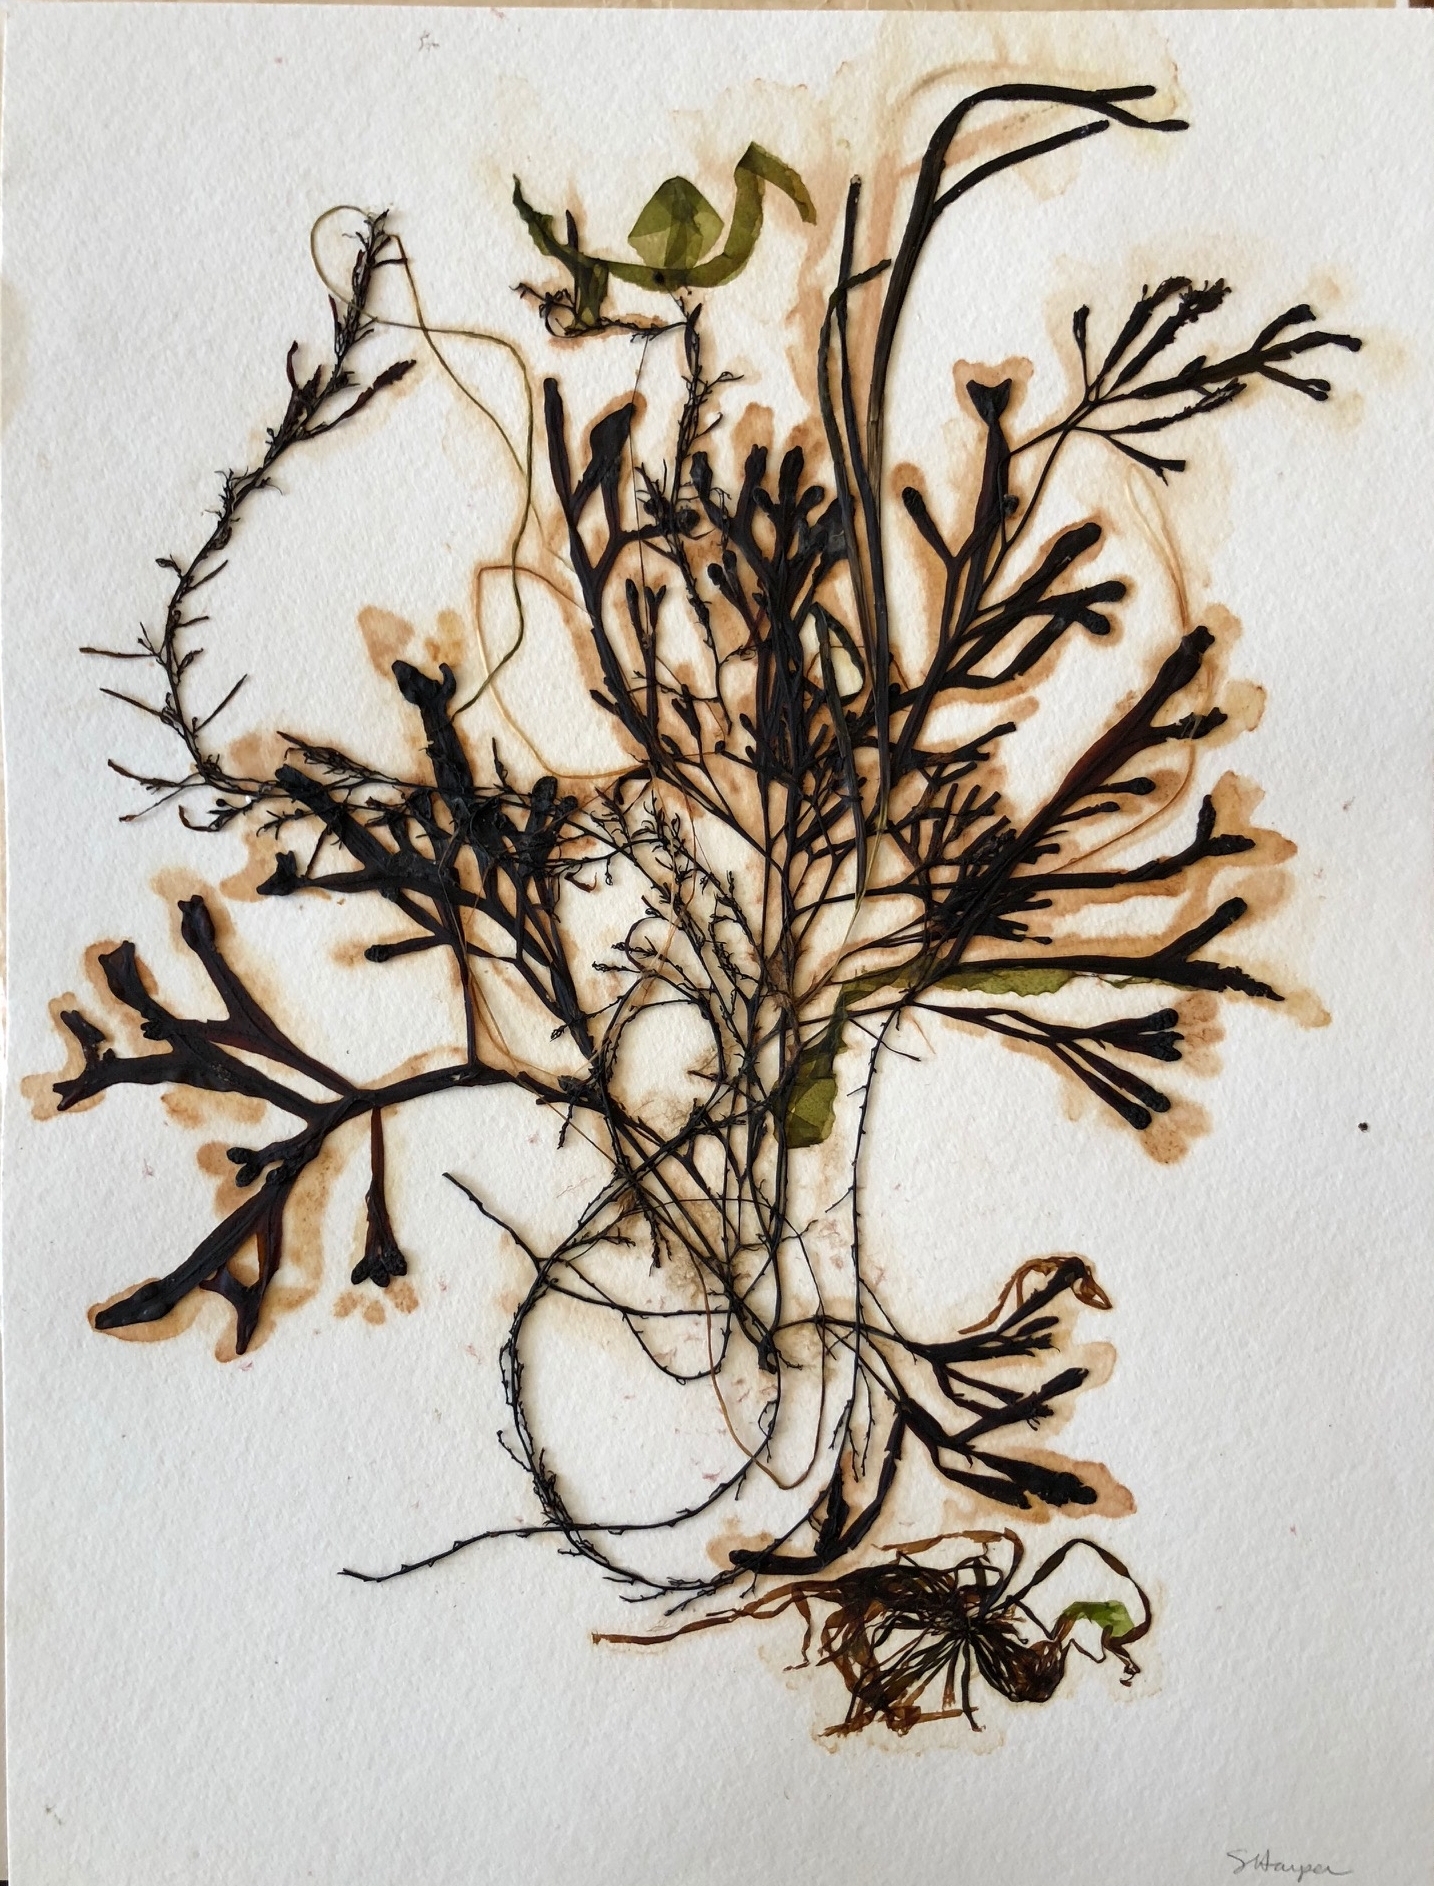 Seaweed 9/13, 11x14